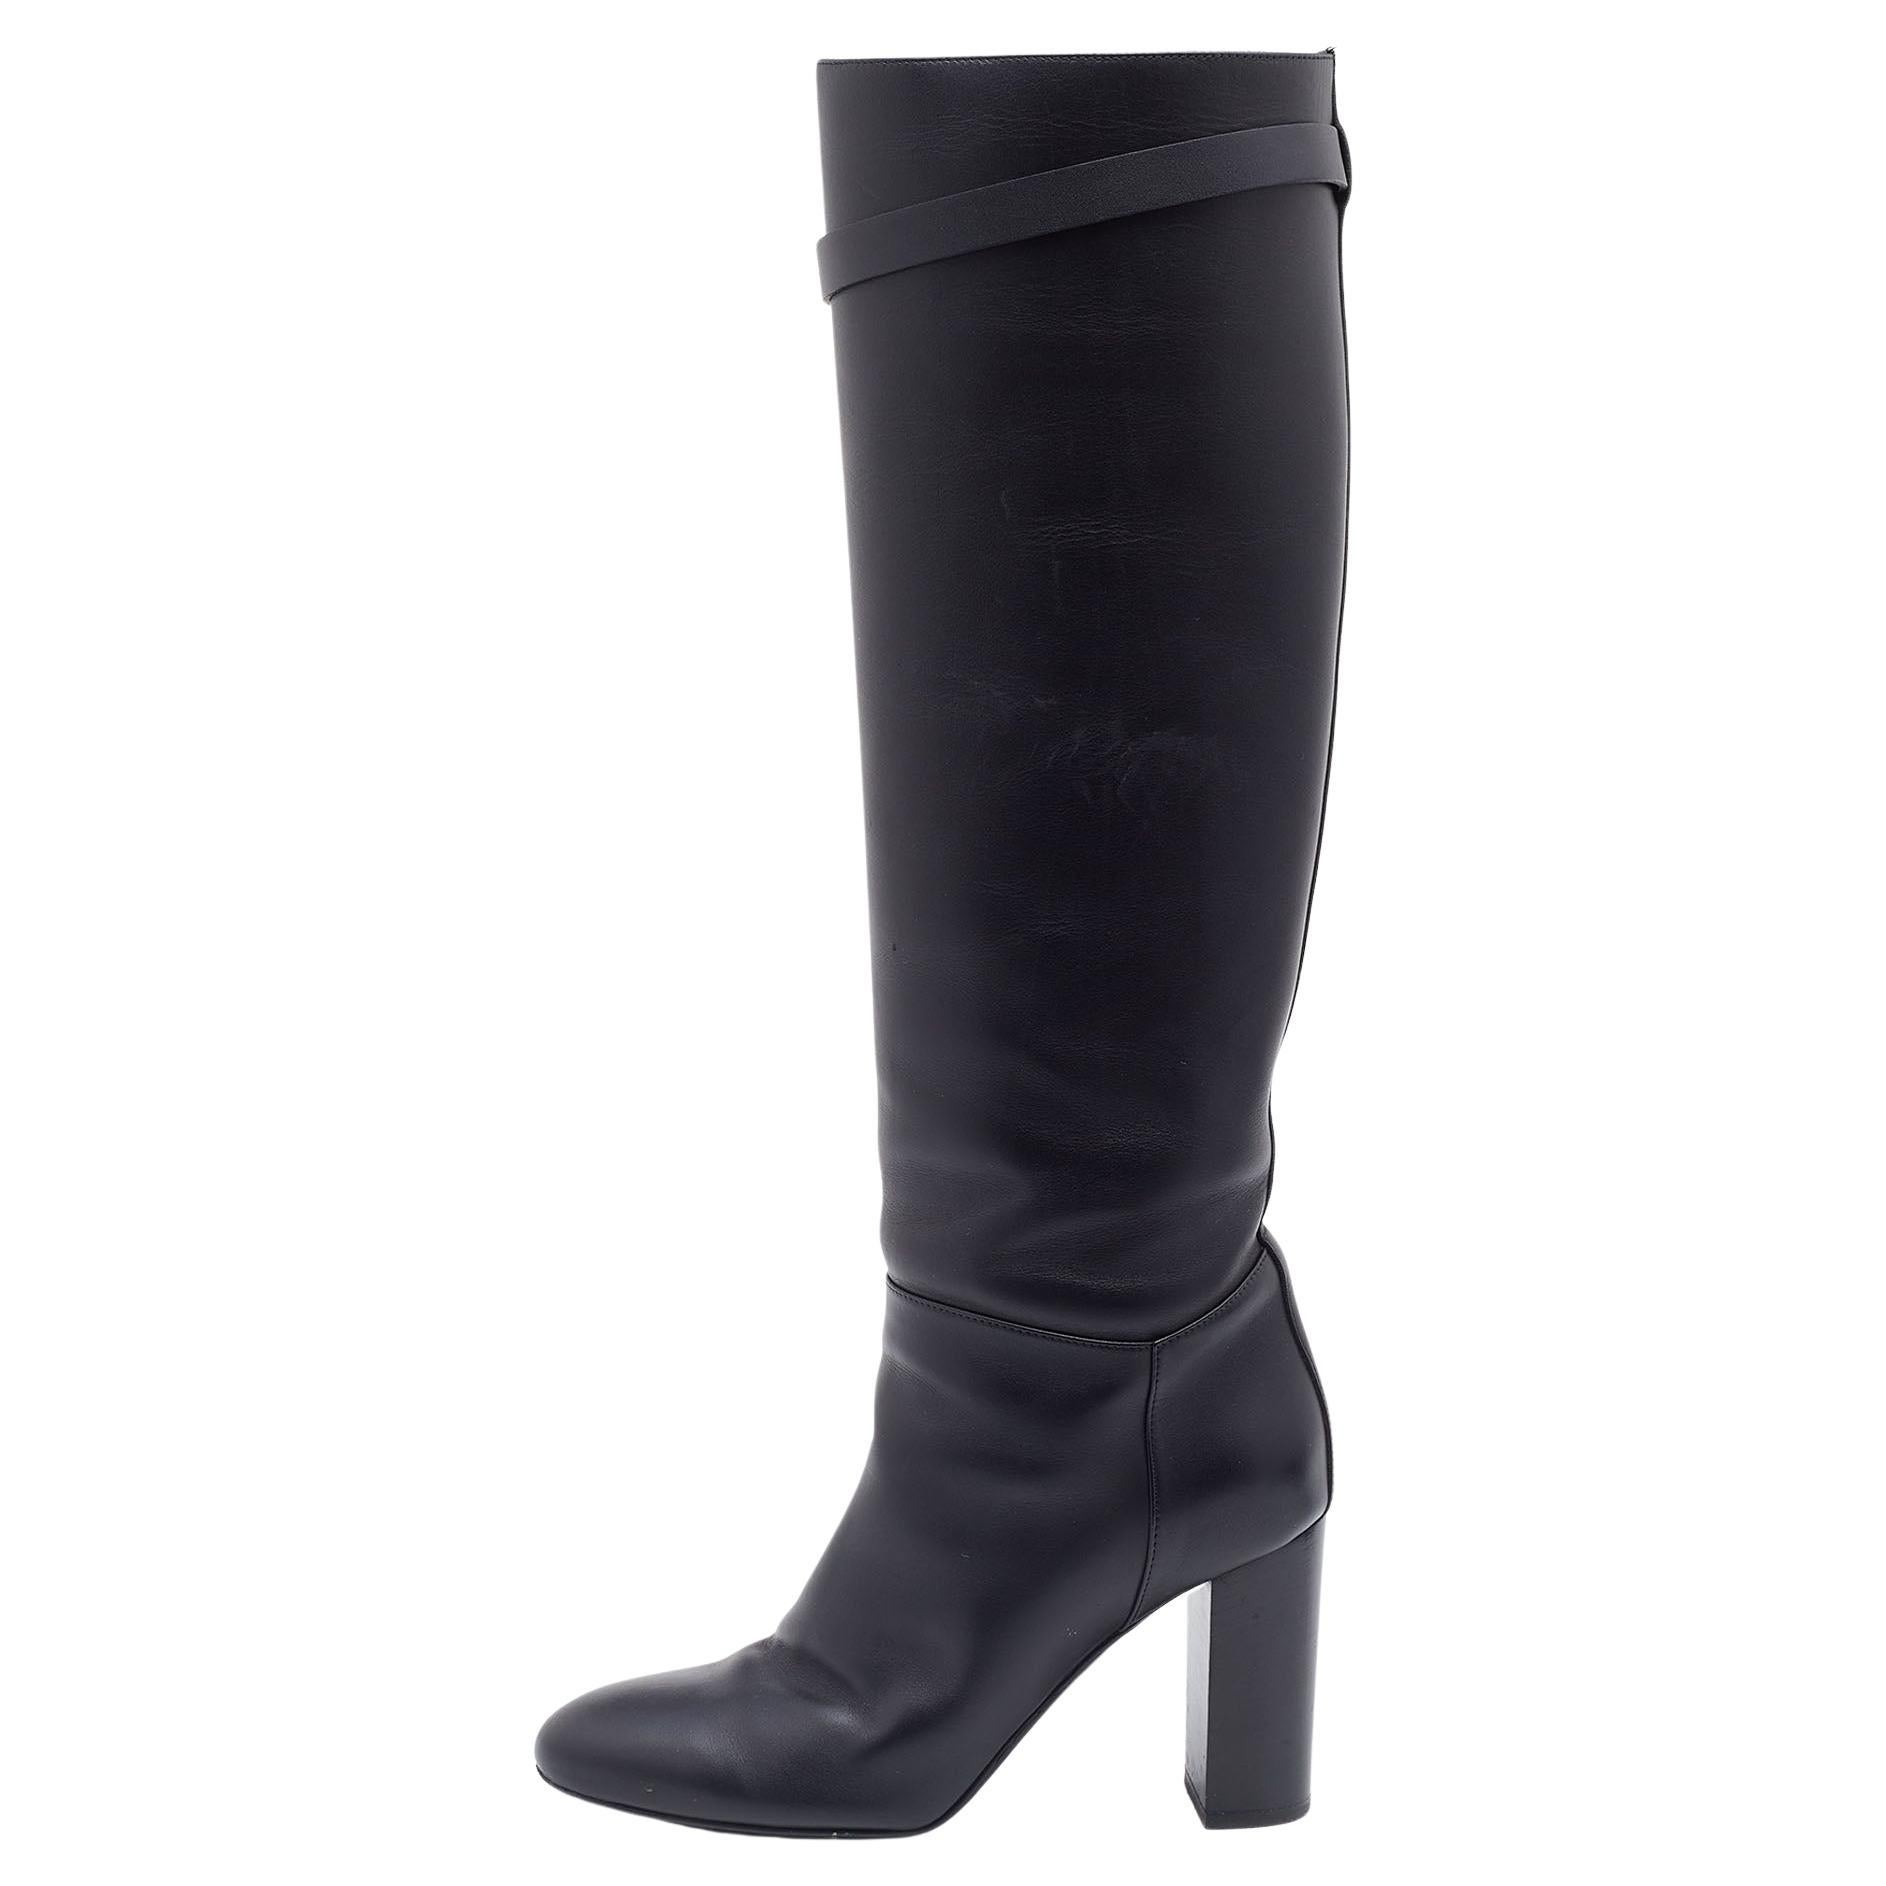 Hermès - Bottes en cuir noir Story longueur genou, taille 37,5